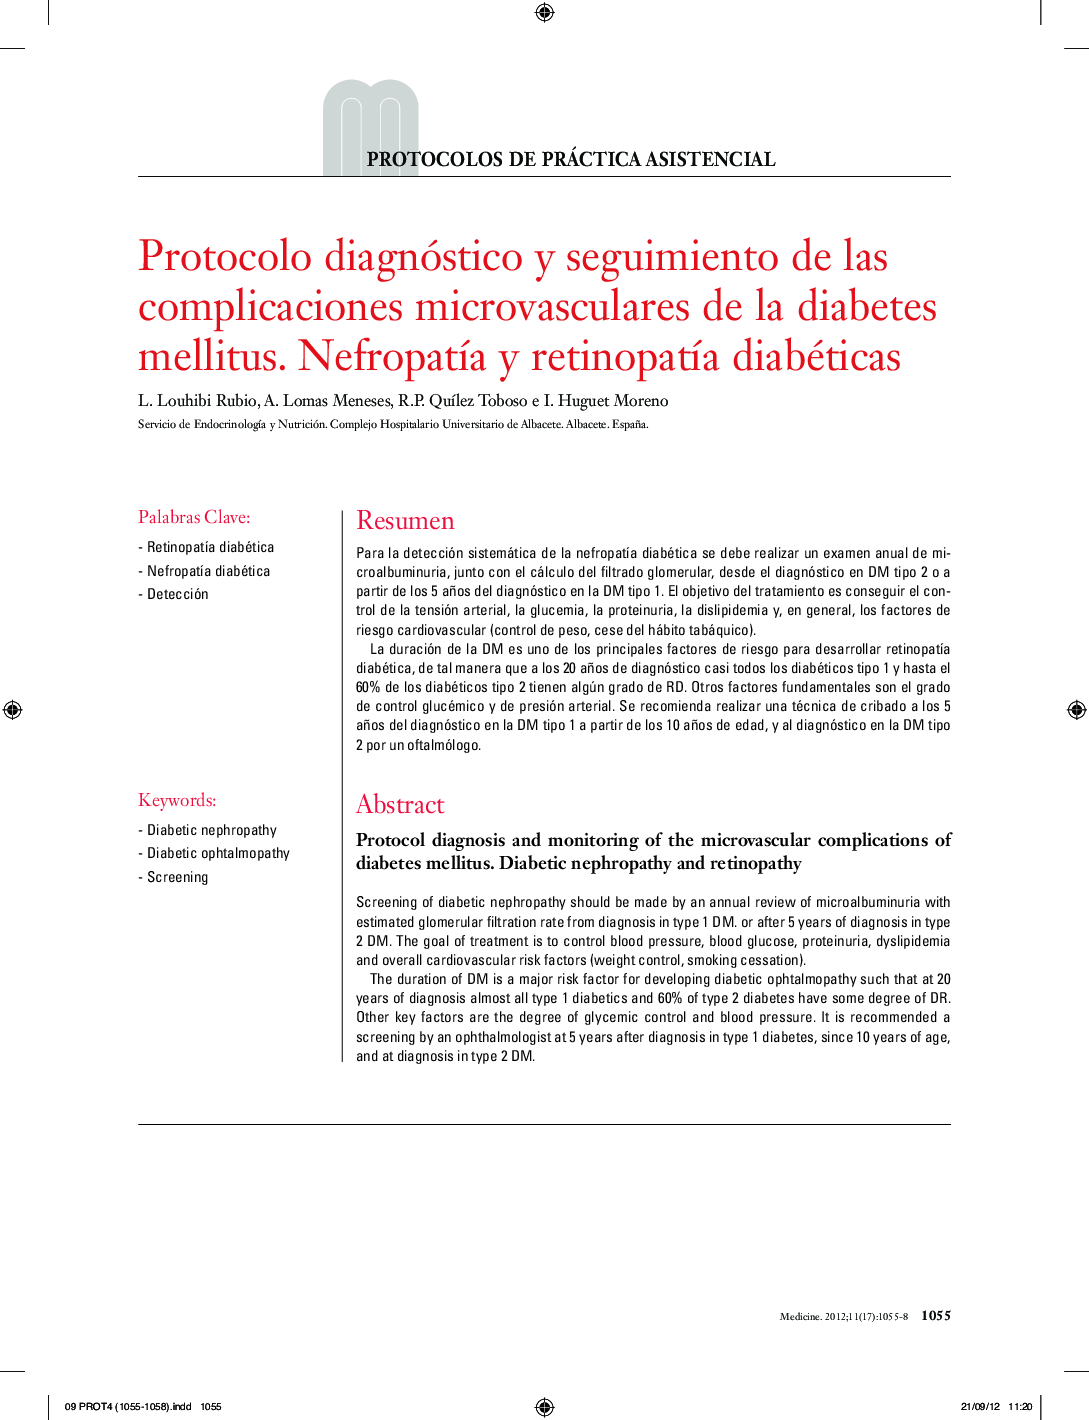 Protocolo diagnóstico y seguimiento de las complicaciones microvasculares de la diabetes mellitus. NefropatÃ­a y retinopatÃ­a diabéticas